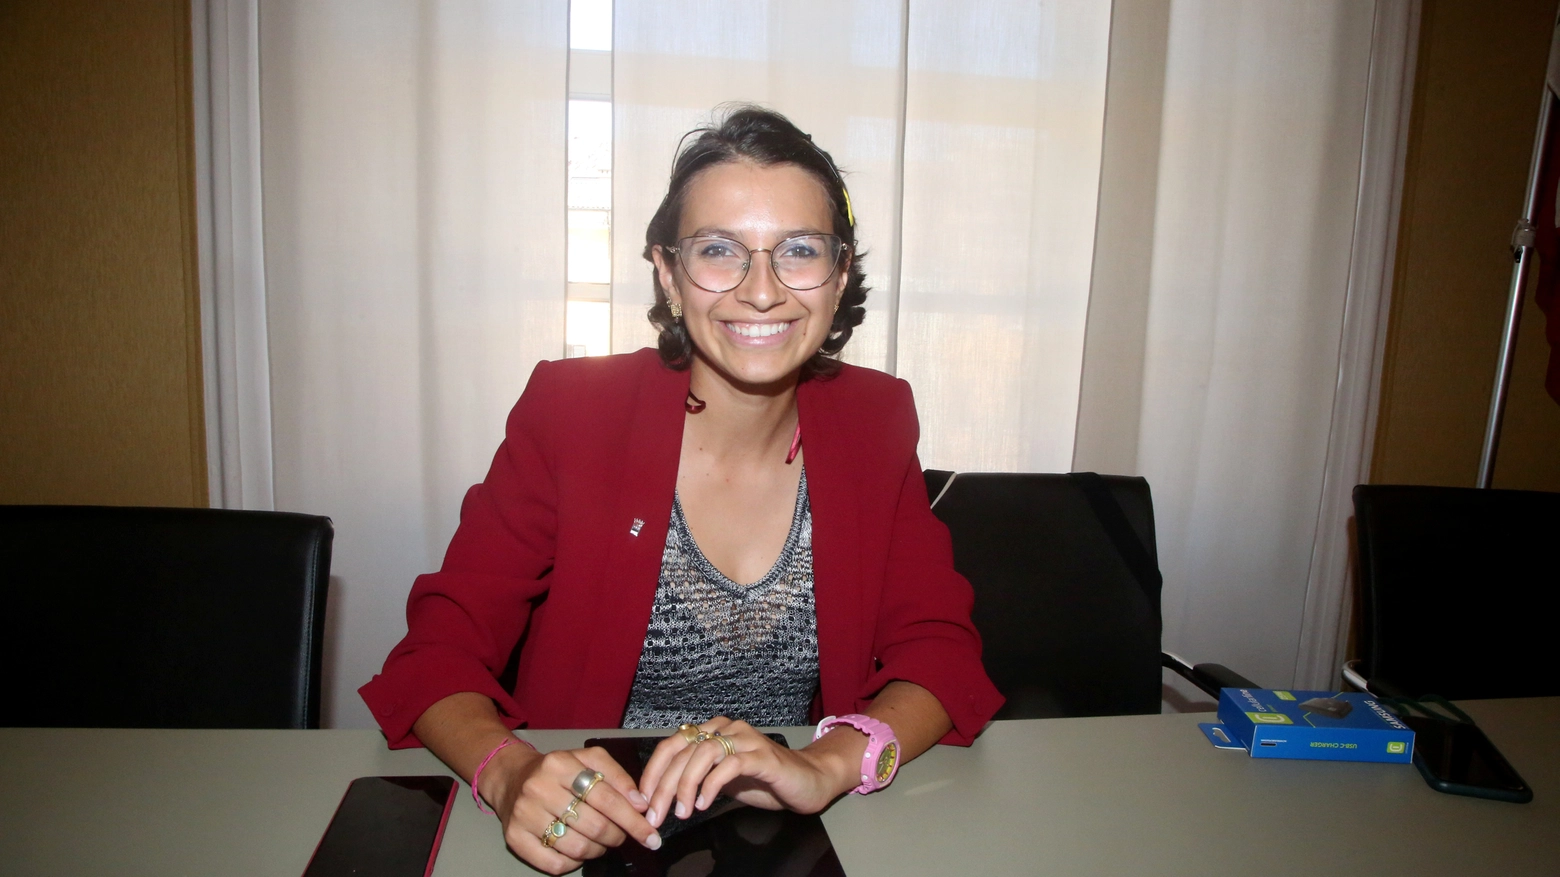 Giorgia Macrelli (Fondamenta), 28 anni, è l’amministratrice più giovane: “Cercheremo di erogare servizi ai nostri studenti del Campus intercettando le richieste per migliorare anche la qualità della vita”